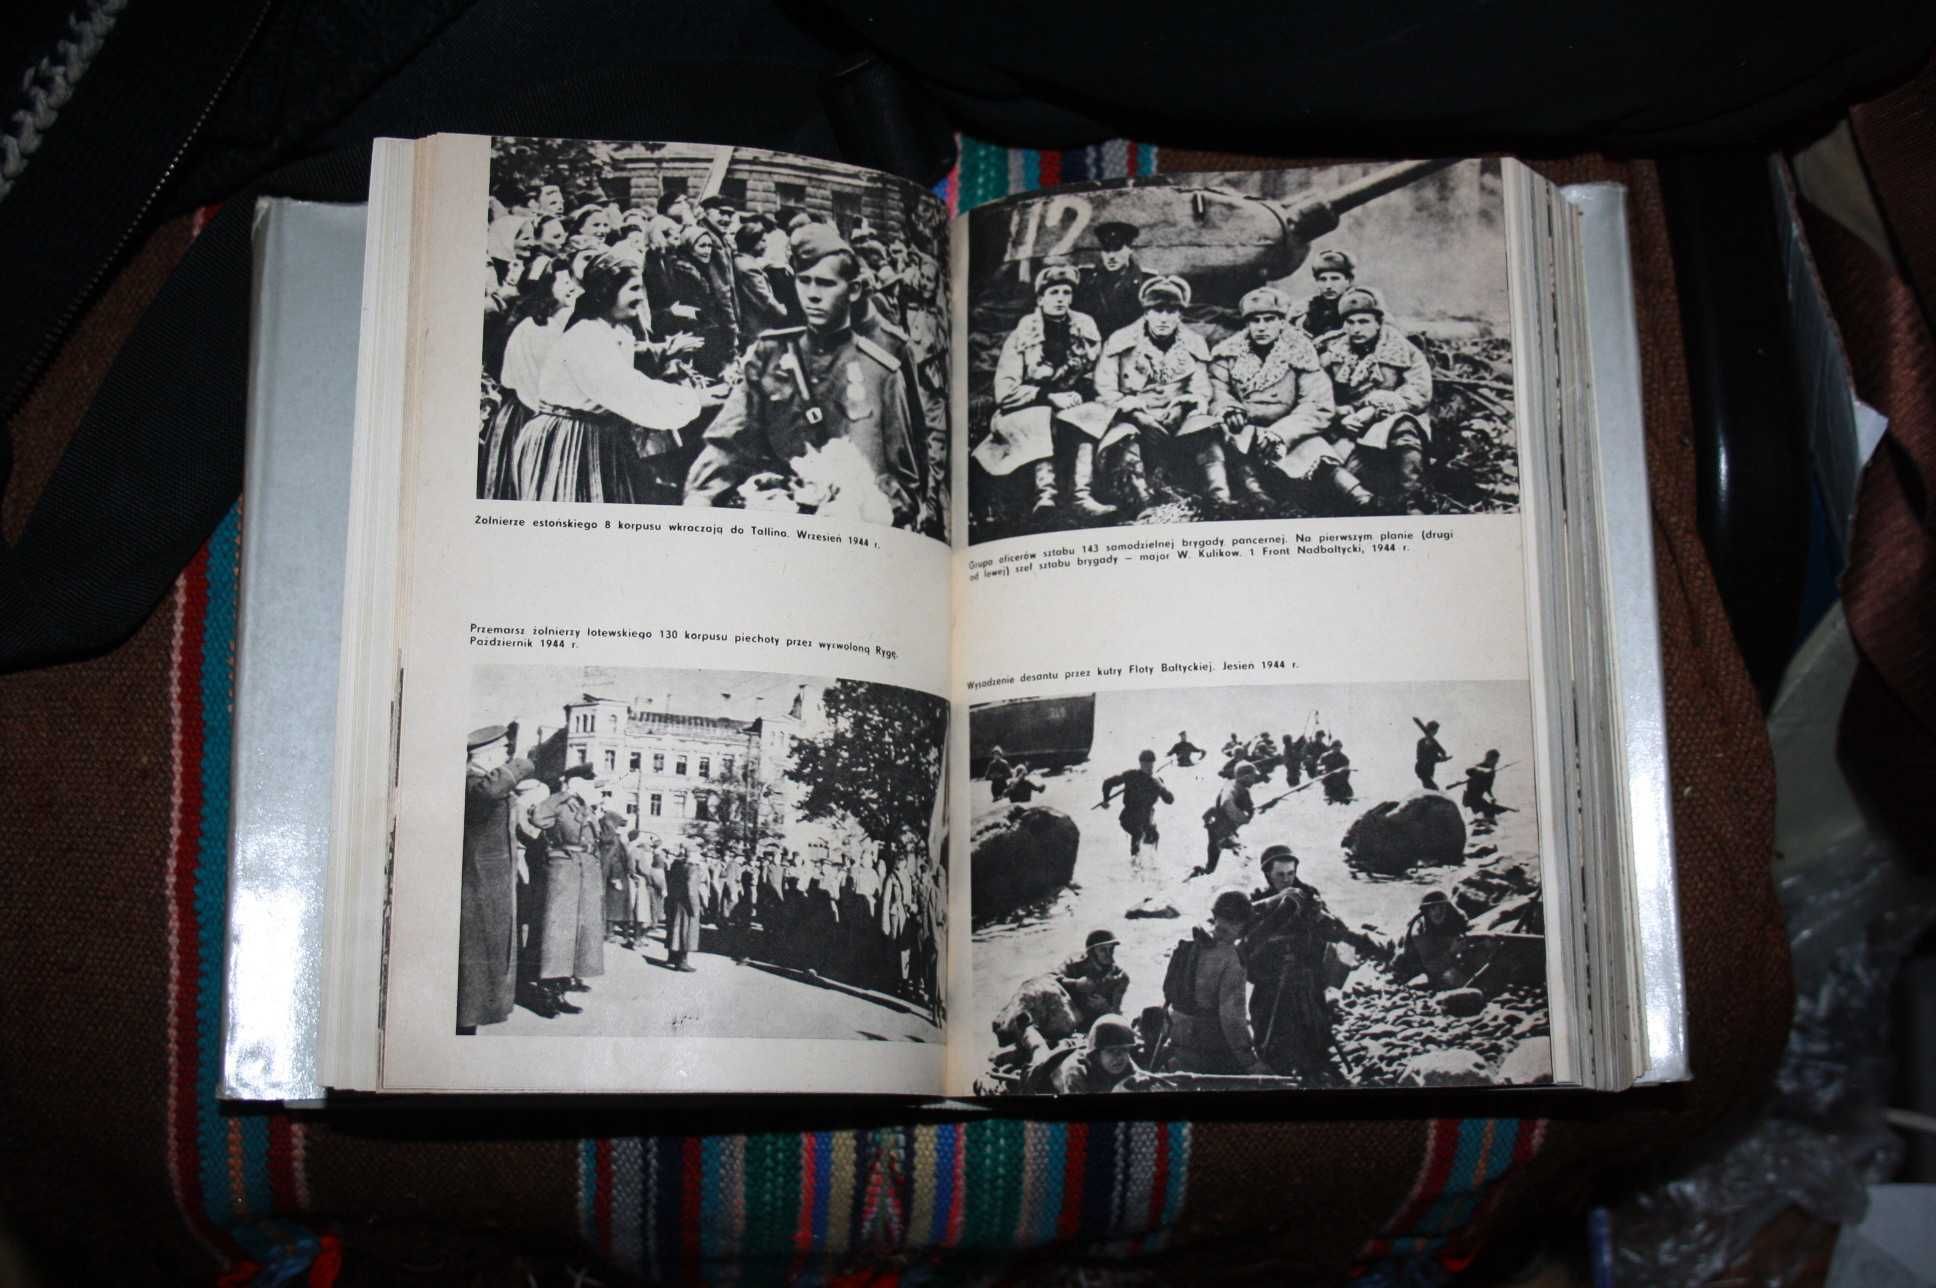 ksiazki Historia 2 wojny swiatowej w tomach 1939-45